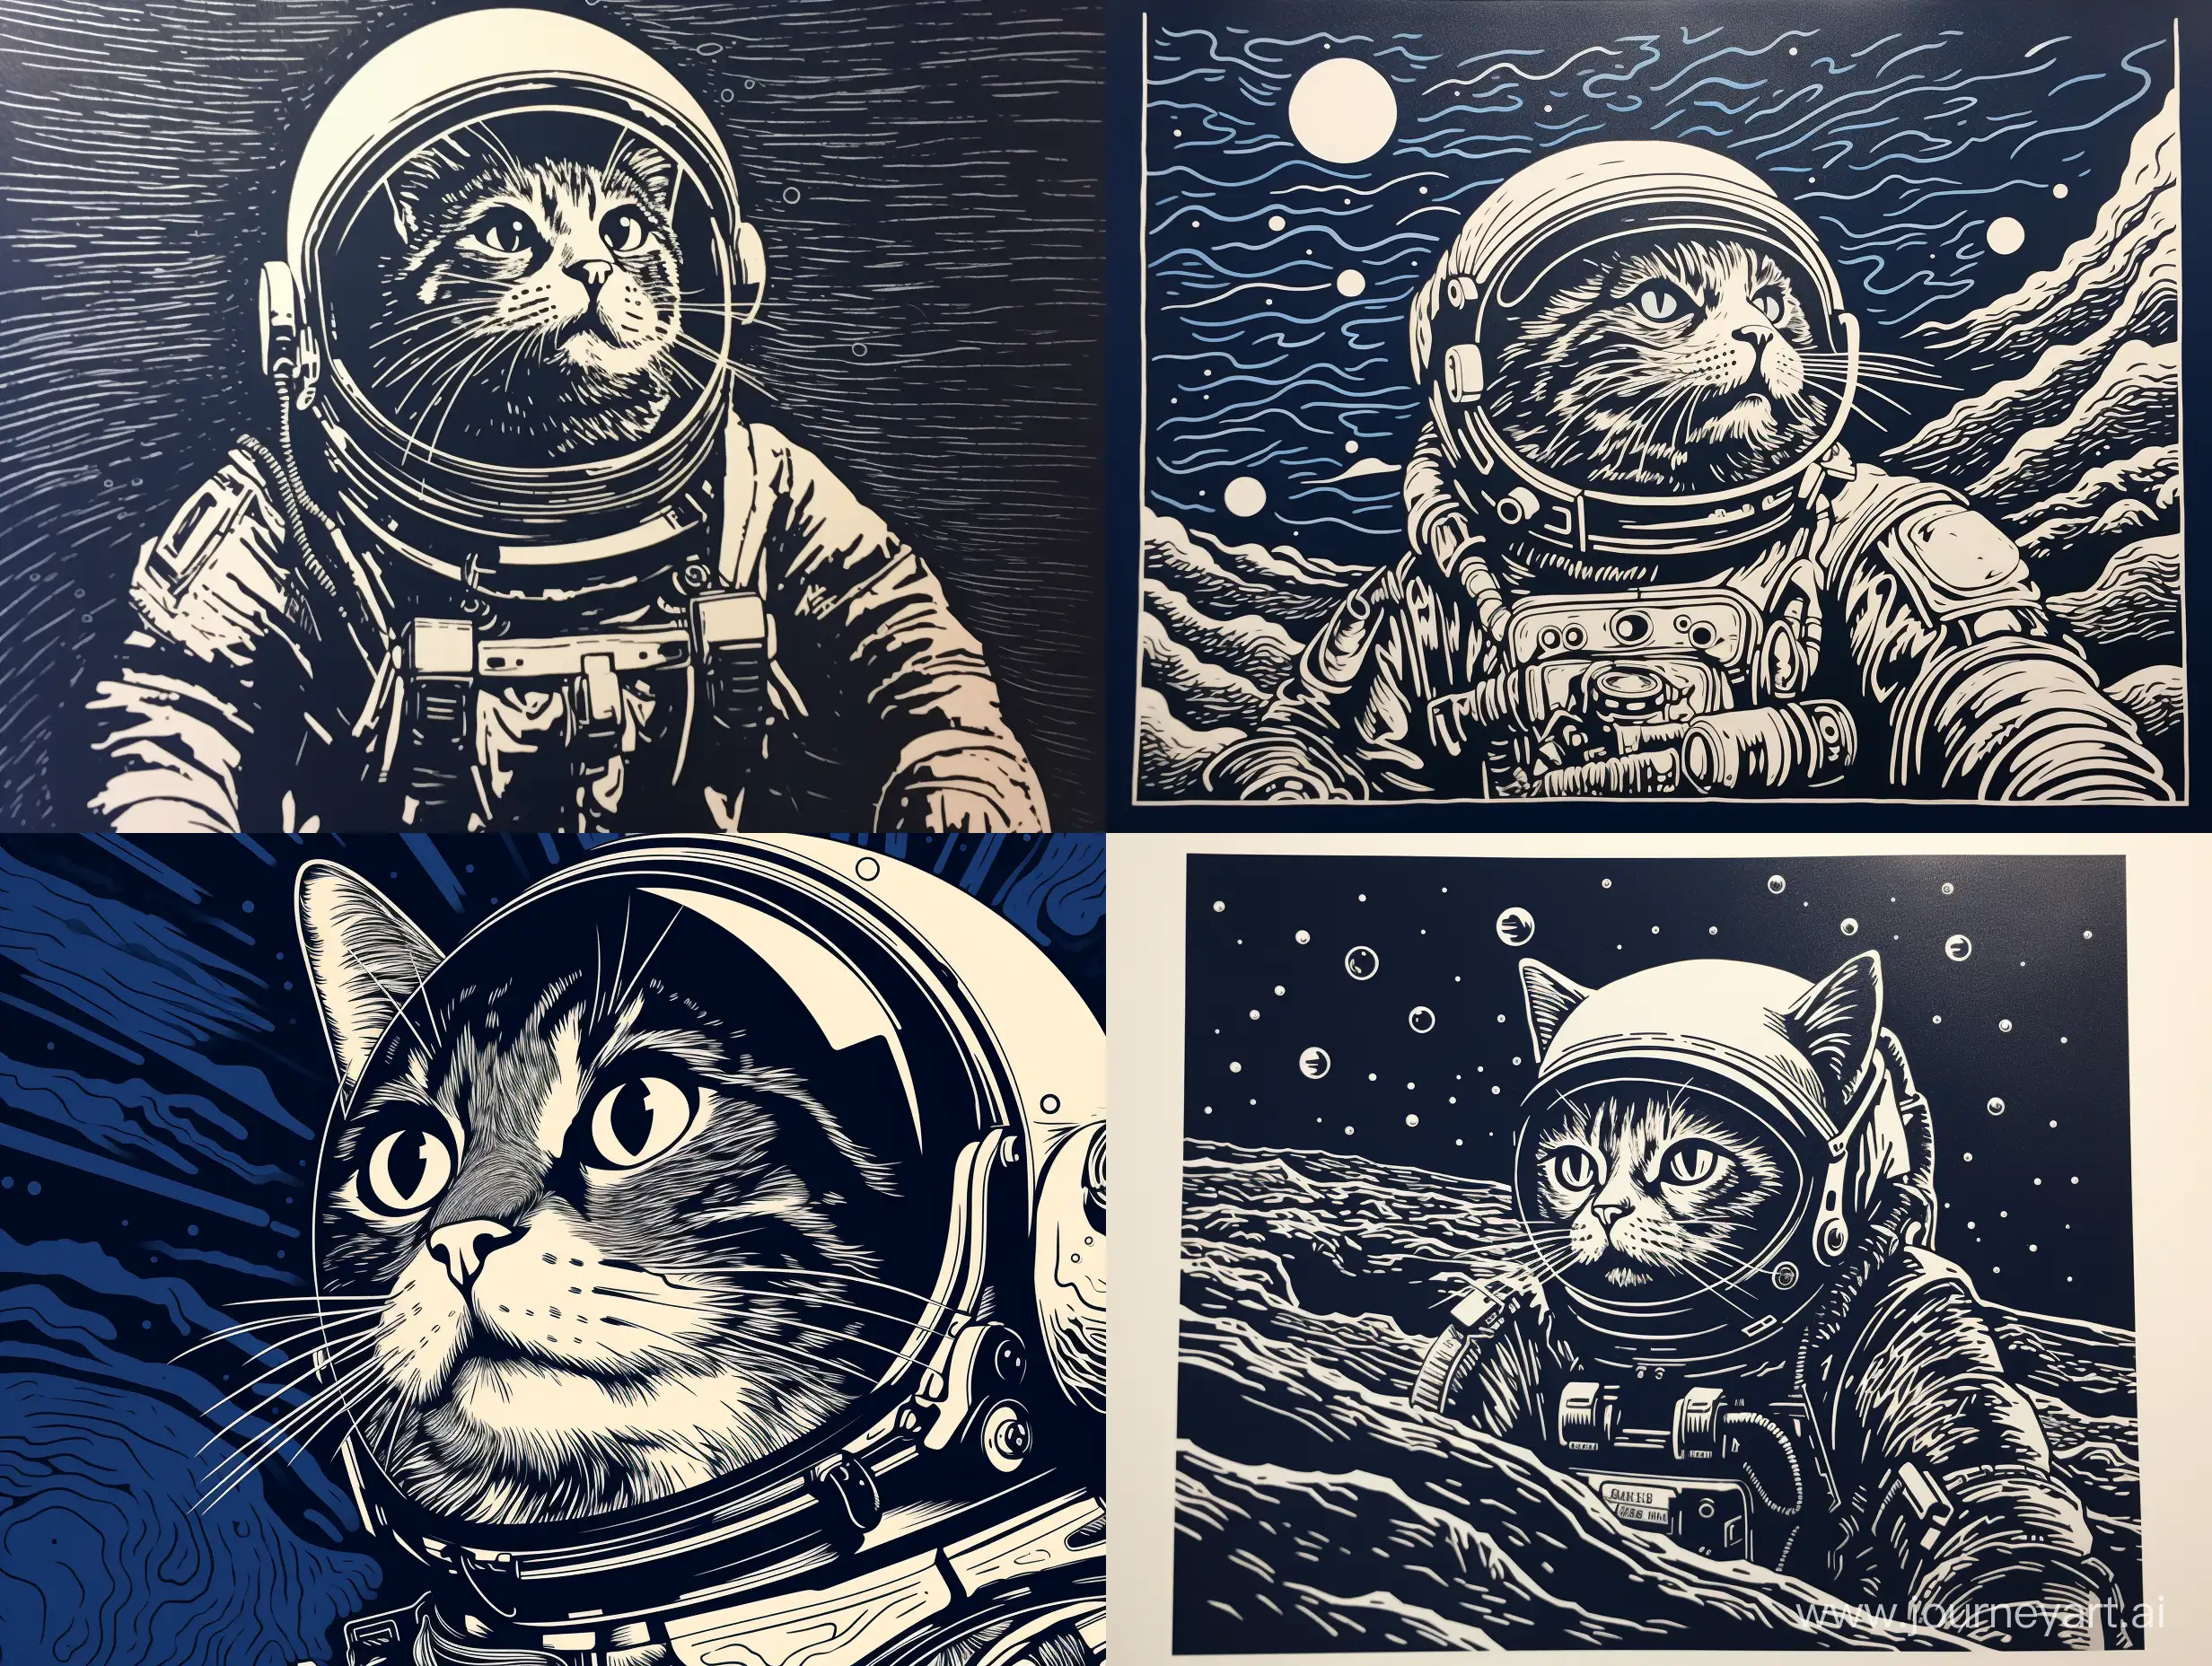 linocut,  black and white illustration, maximum contrast, 
парящий астронавт кот, синие оттенки